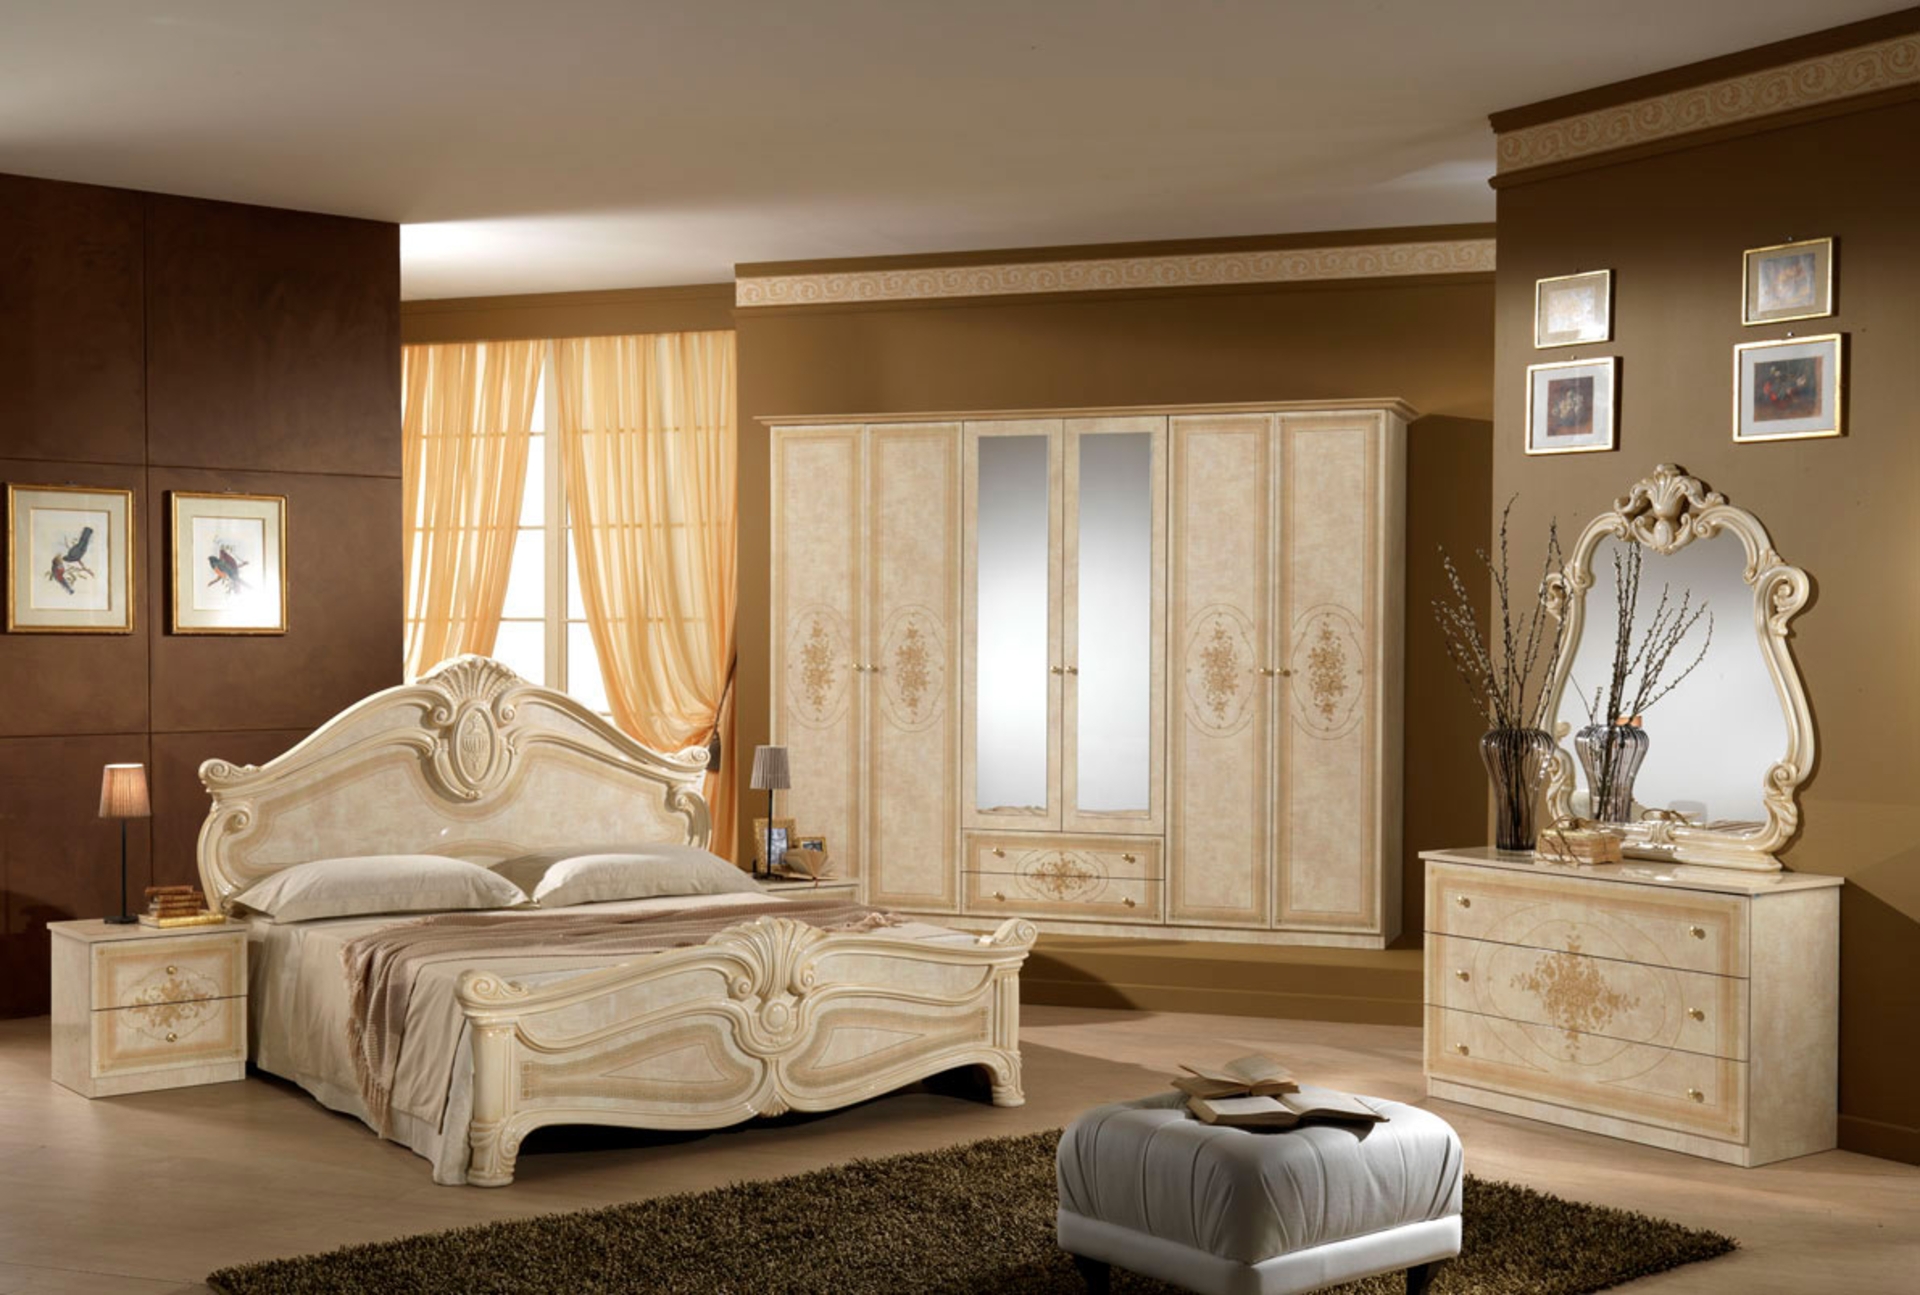 luxury-bedroom-ideas